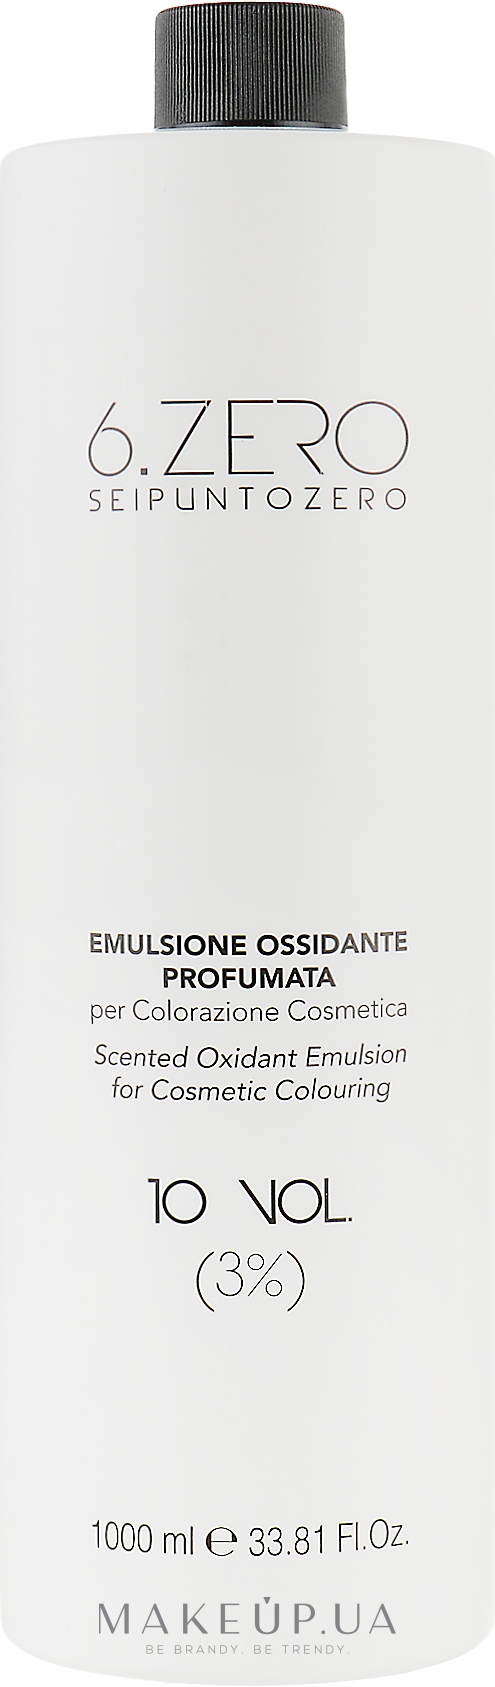 Окислительная эмульсия - Seipuntozero Scented Oxidant Emulsion 10 Volumes 3% — фото 1000ml